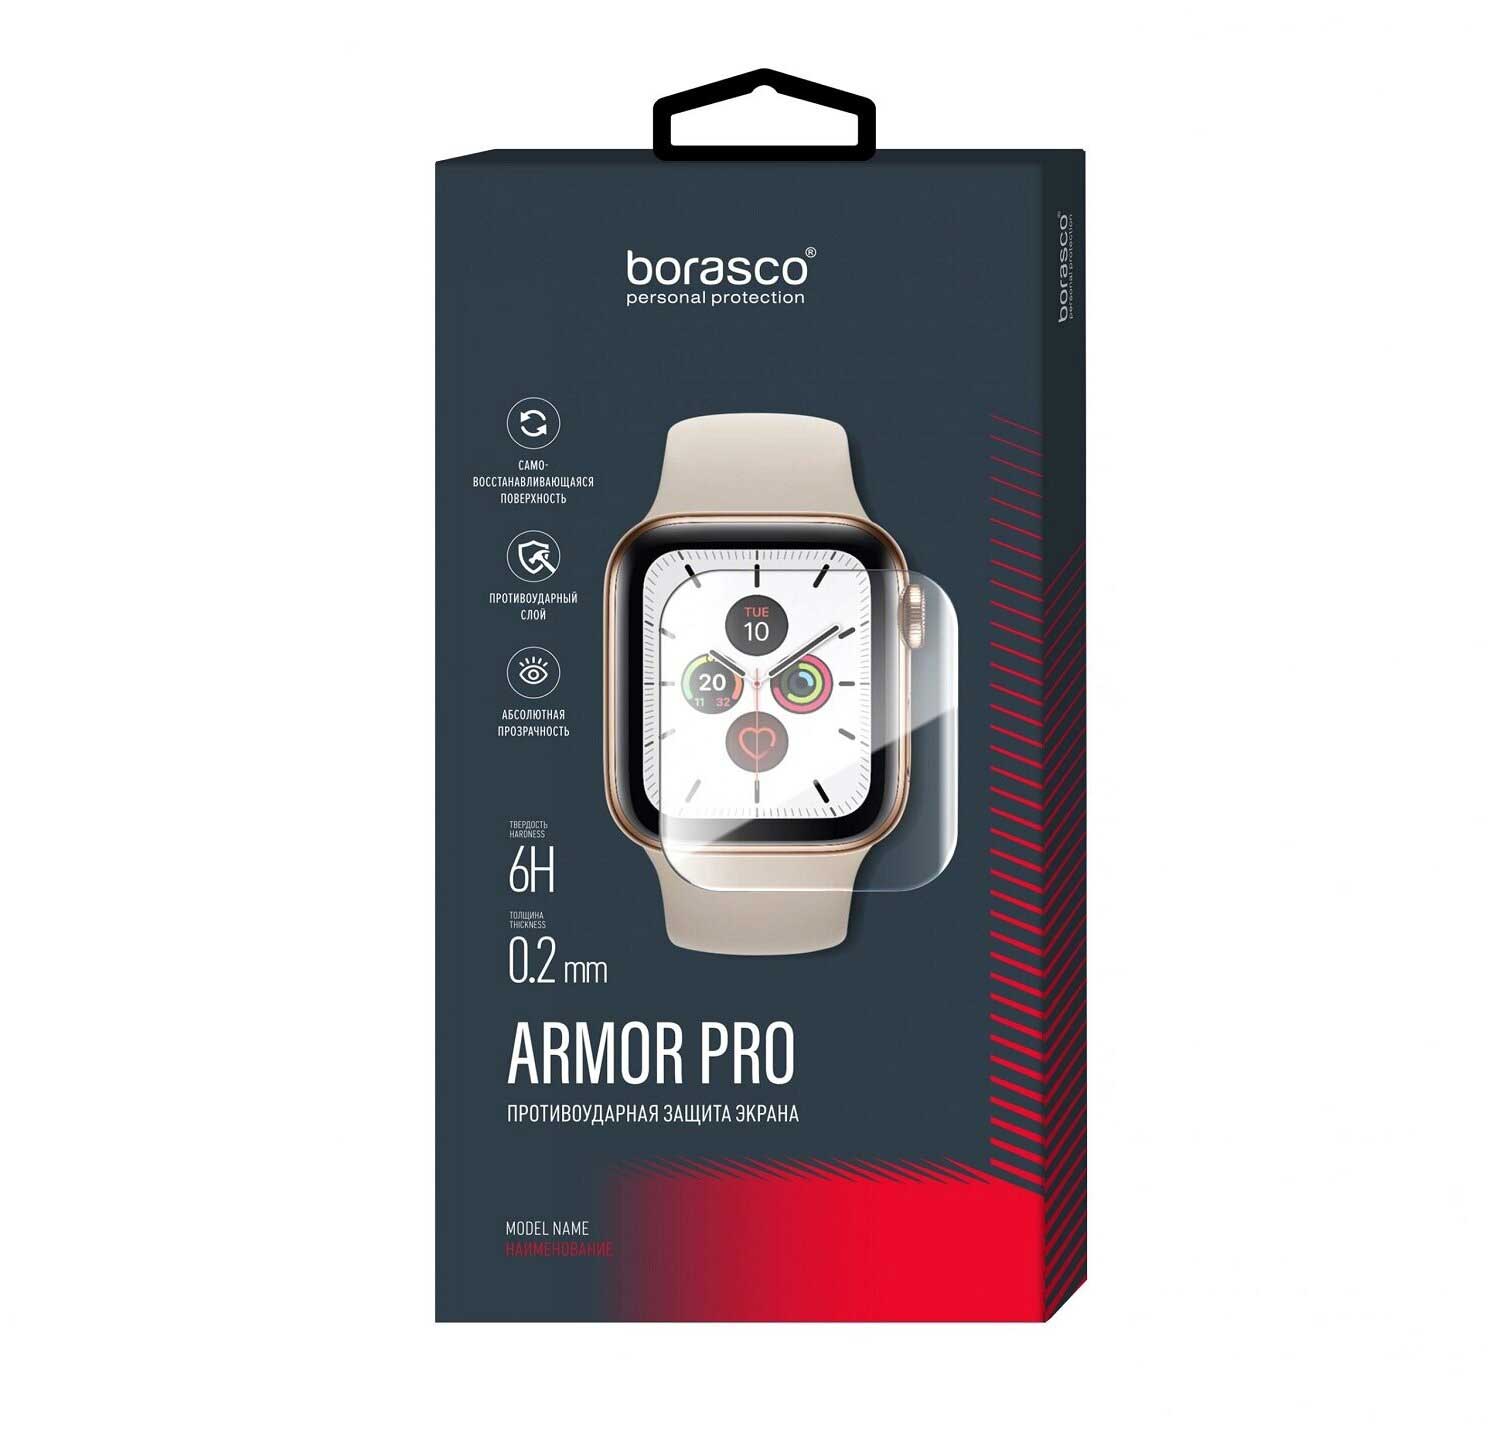 Защита экрана BoraSCO Armor Pro для Aimoto Pro Кнопка Жизни матовый защита экрана borasco armor pro для aimoto pro life